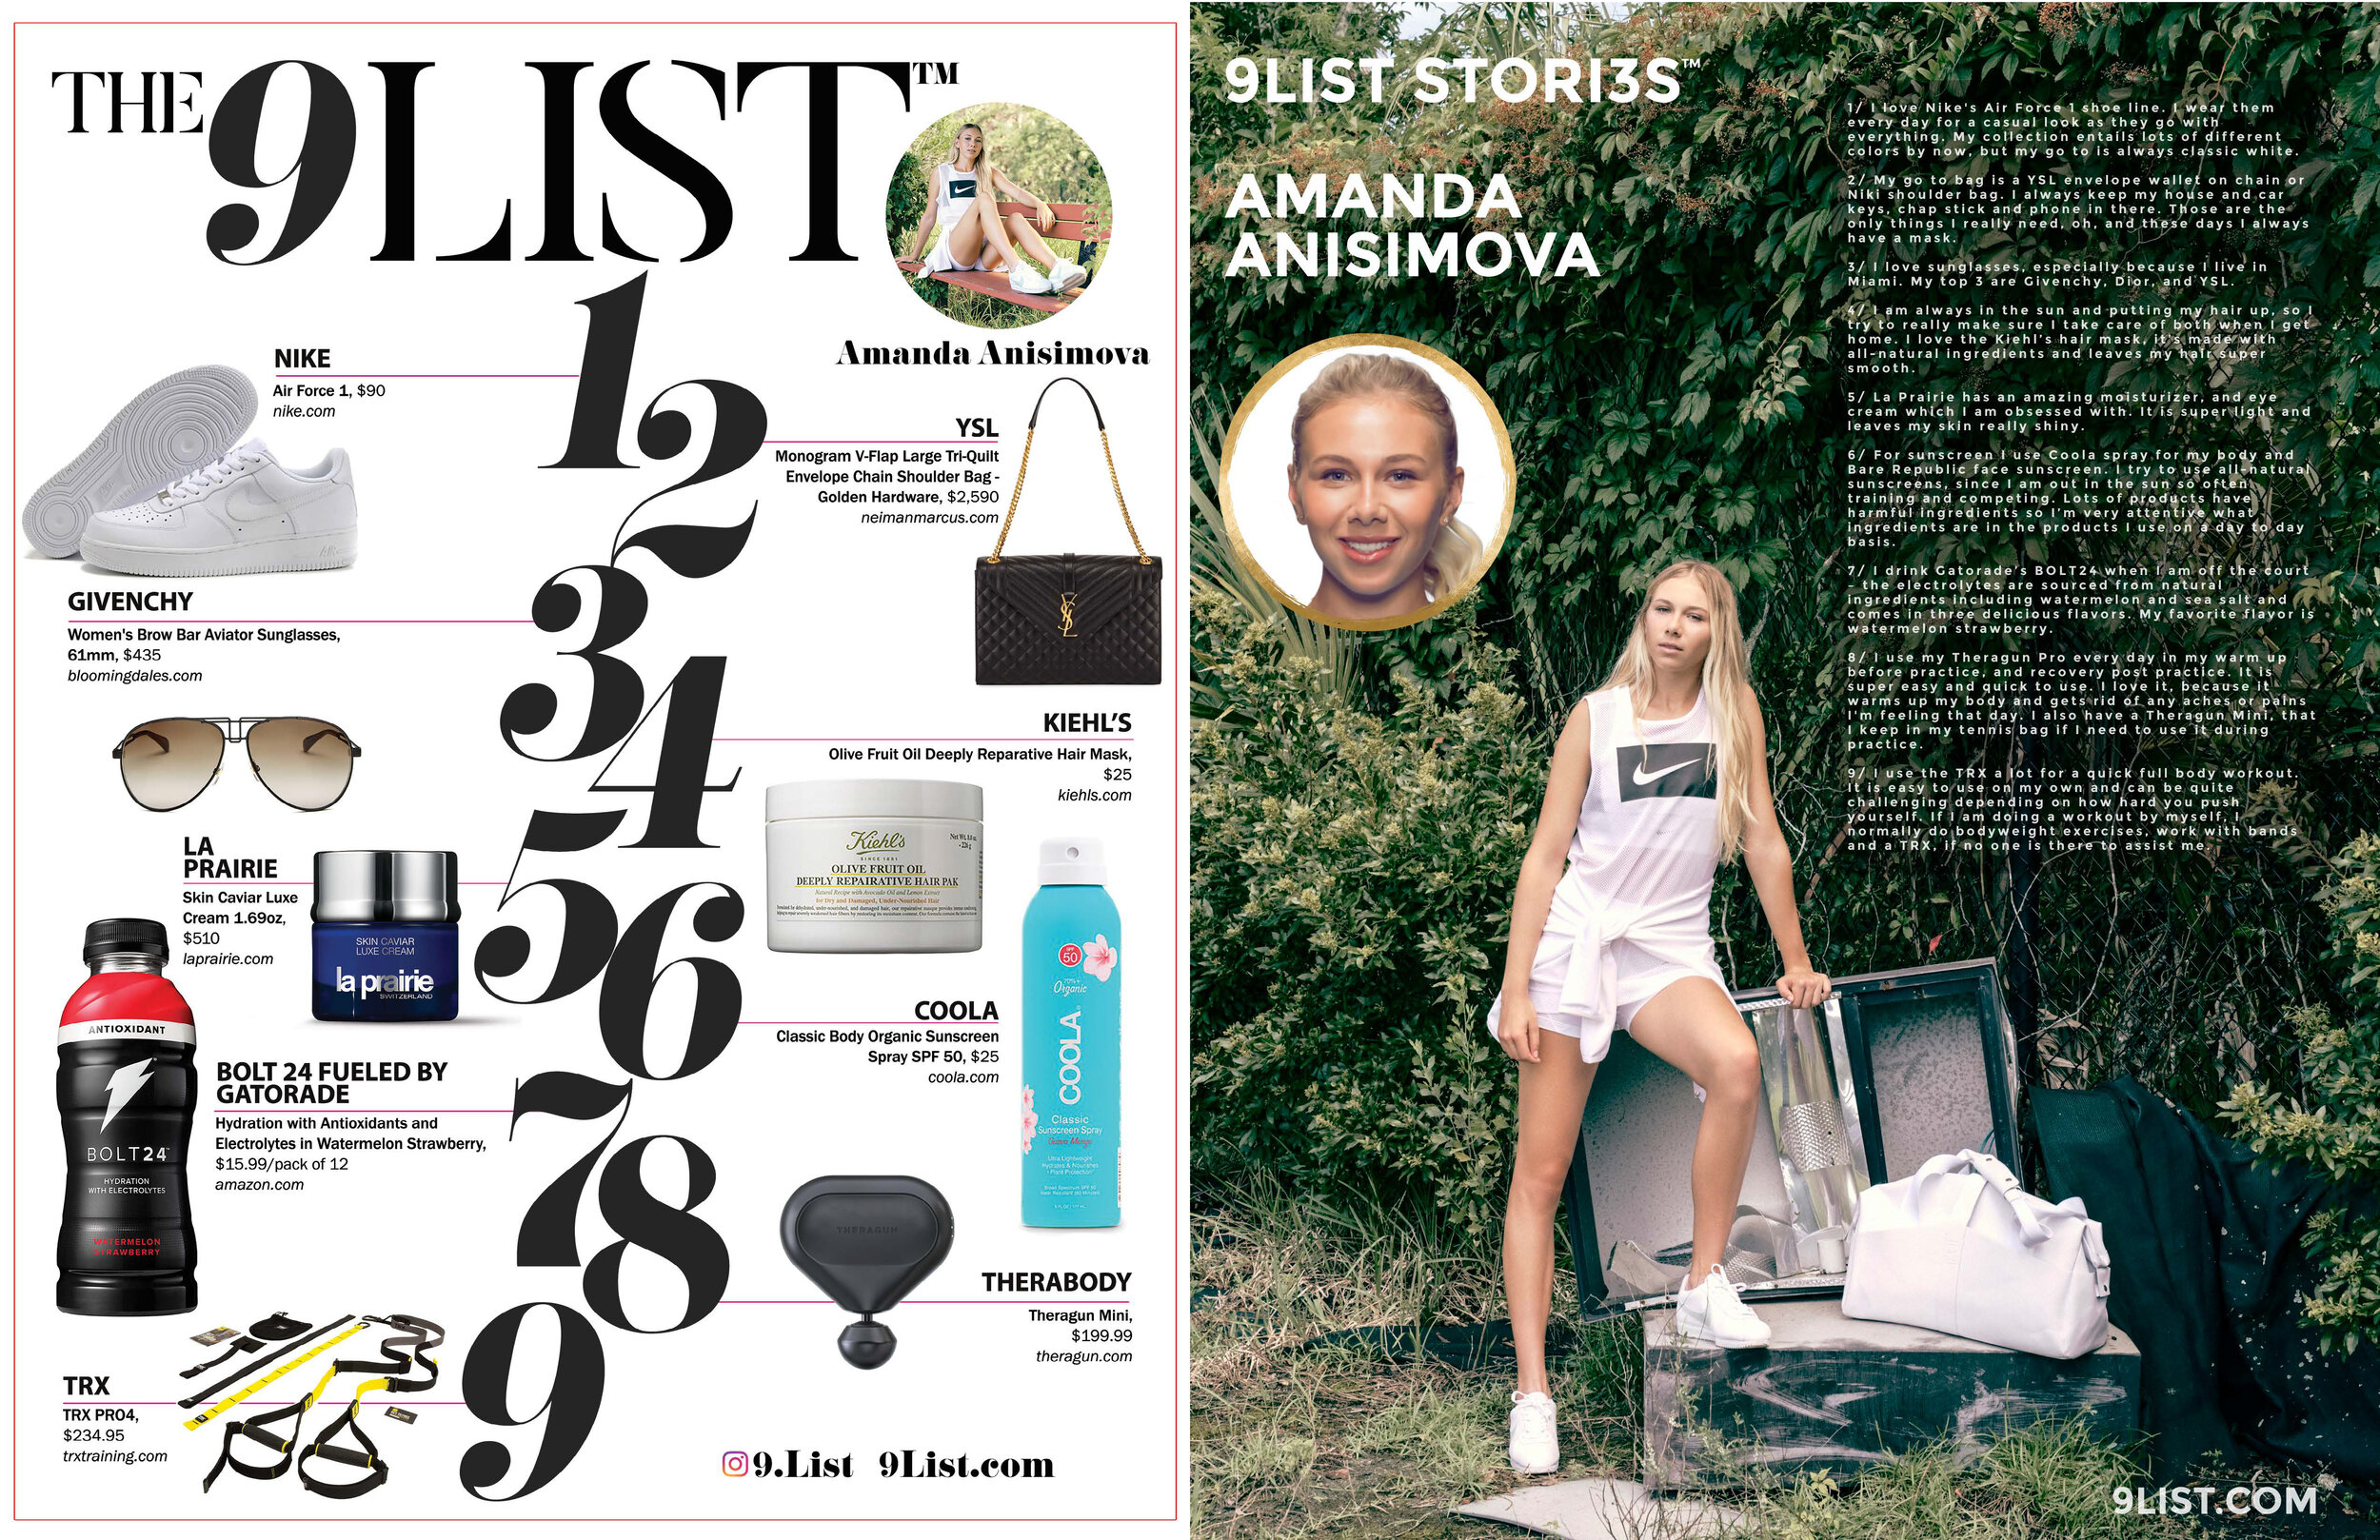 Amanda Anisimova/9LIST STORI3S